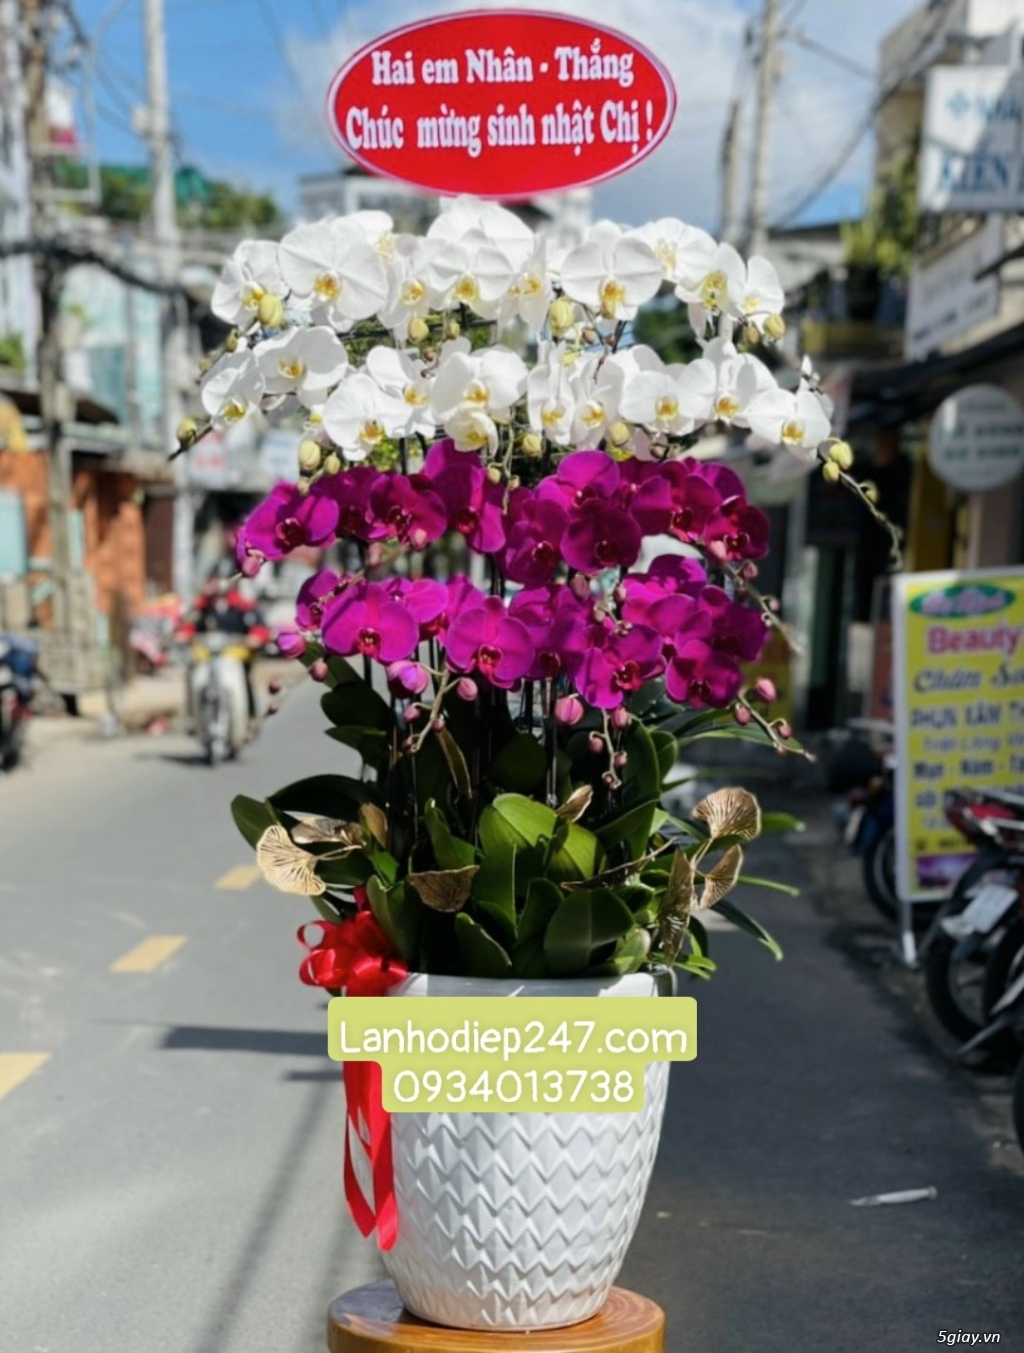 Shop hoa chuyên Lan Hồ Điệp cao cấp uy tín số 1 TPHCM - Hoa Lan 247 SG - 11